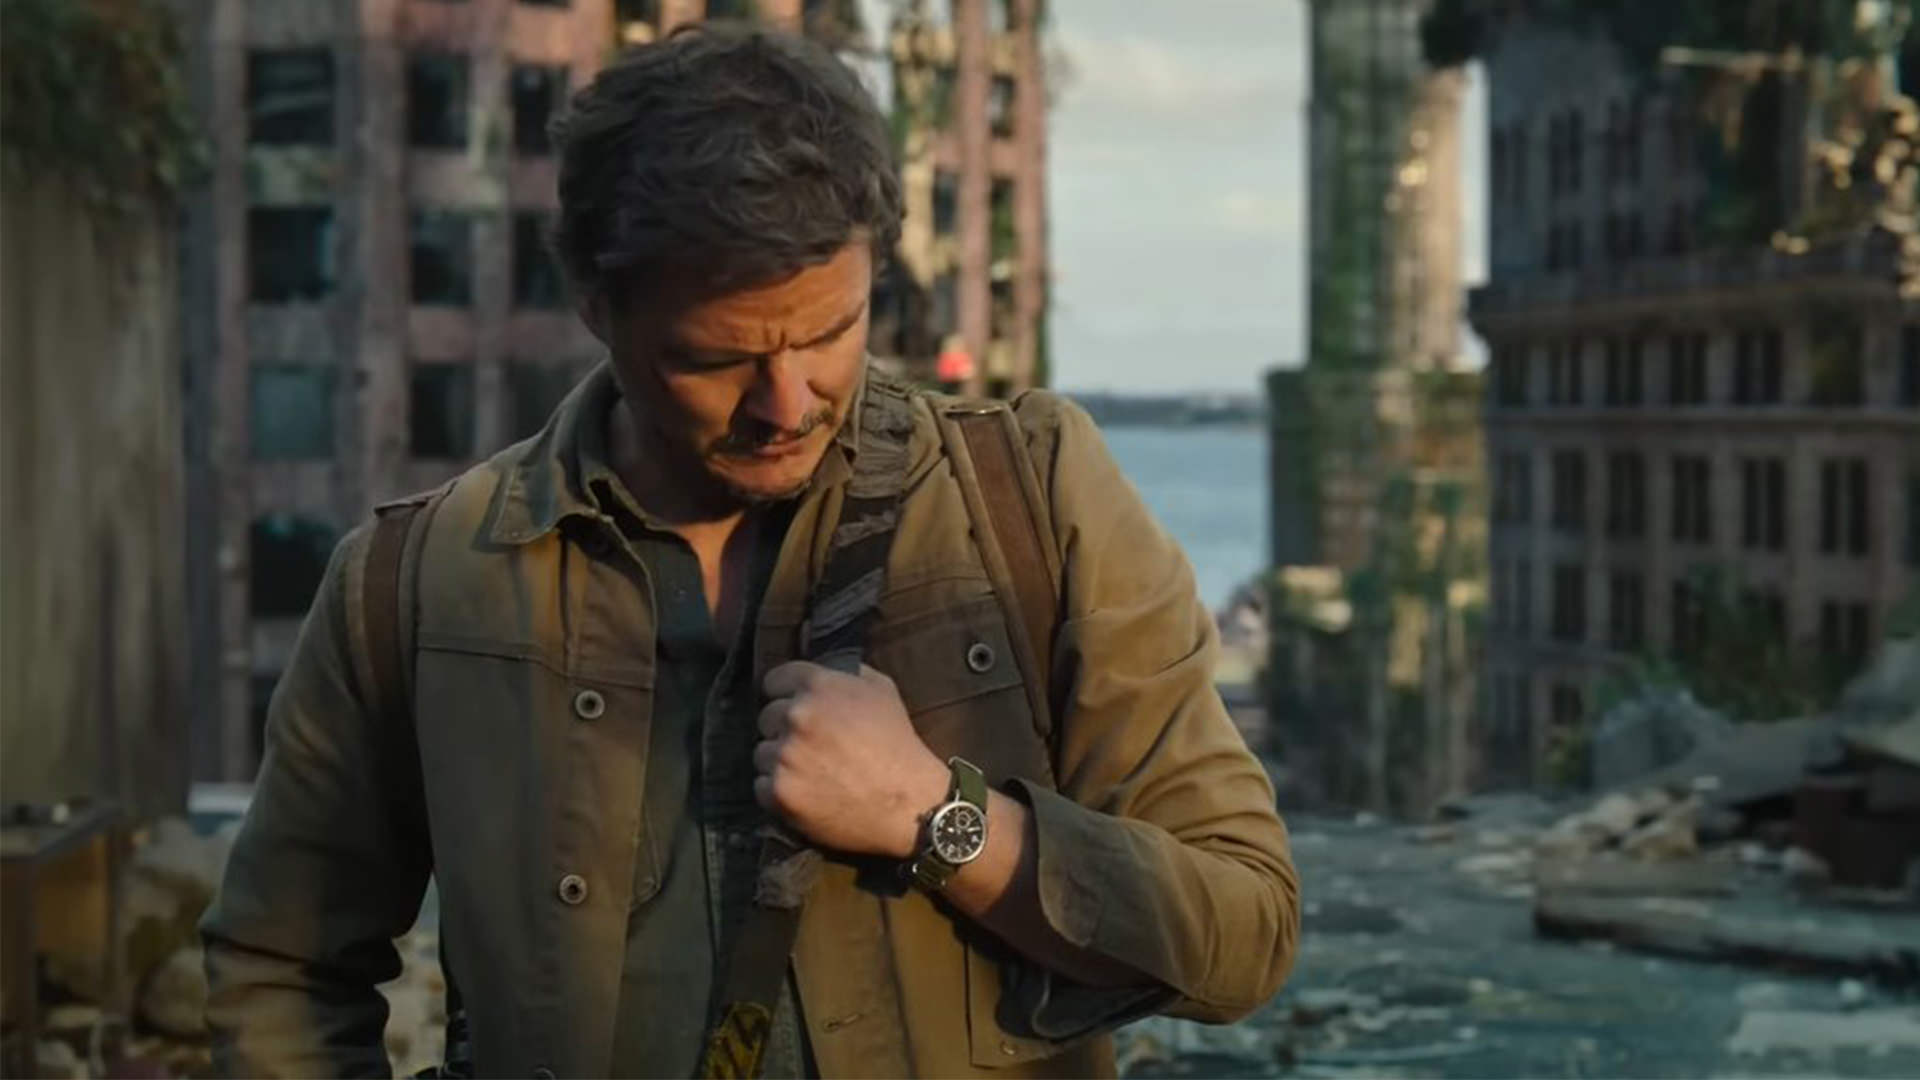 زنده شدن خاطرات خوب گذشته برای جول با تماشای ساعت مچی شکسته در سریال The Last of Us